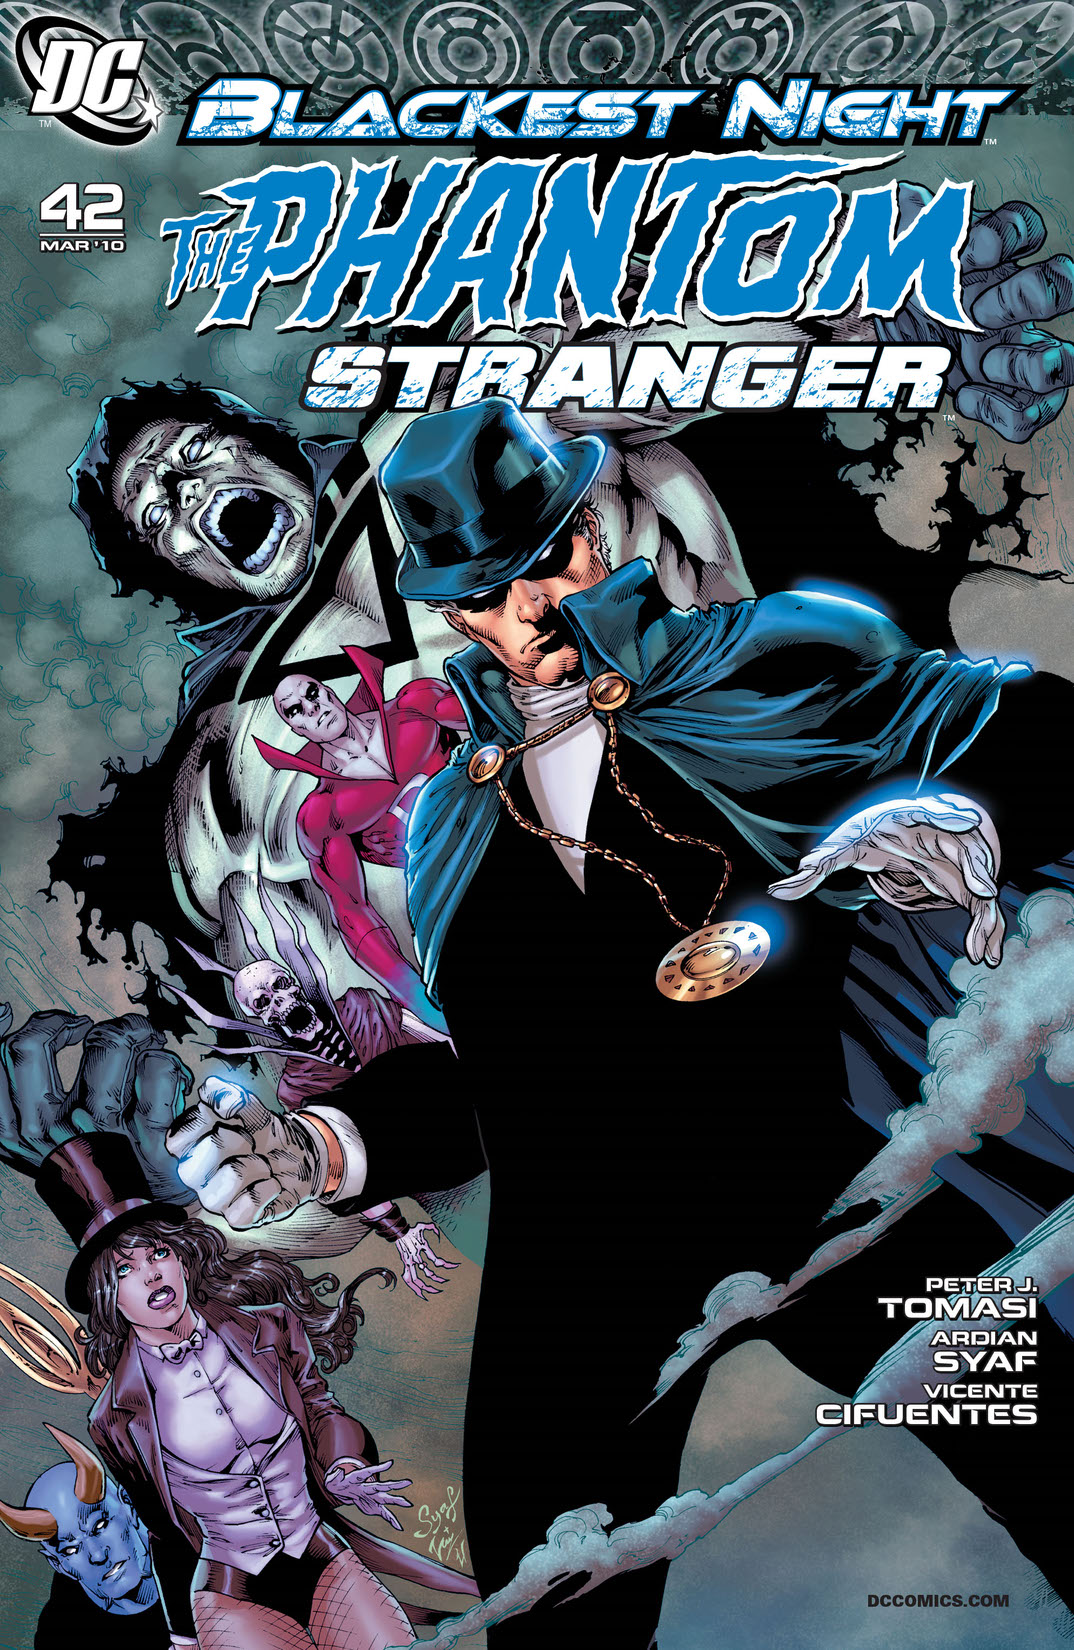 Phantom Stranger #42 preview images